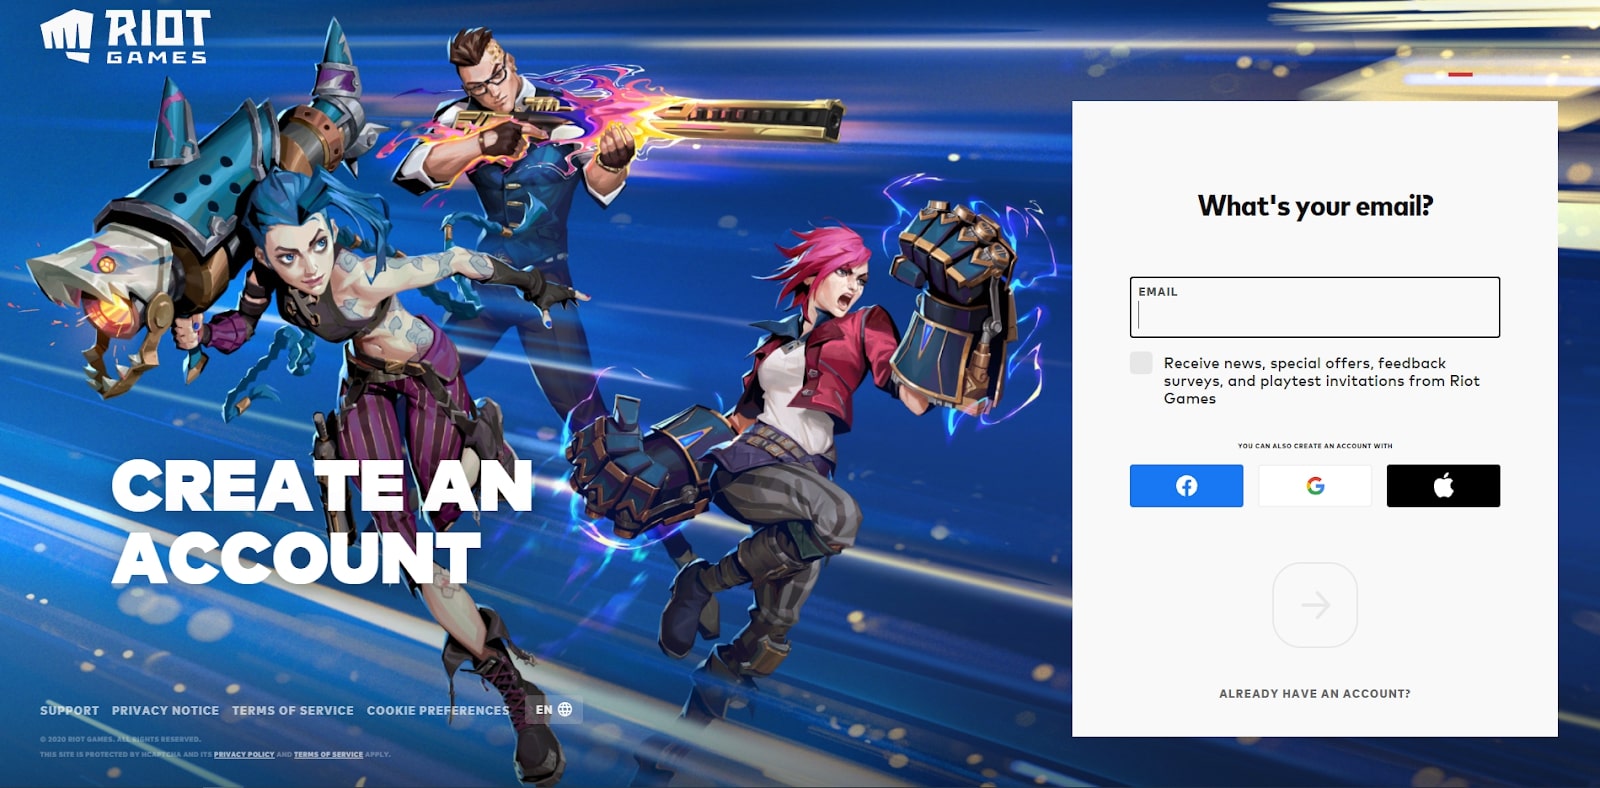 Schermata della pagina web di Riot Games durante la creazione di un nuovo account